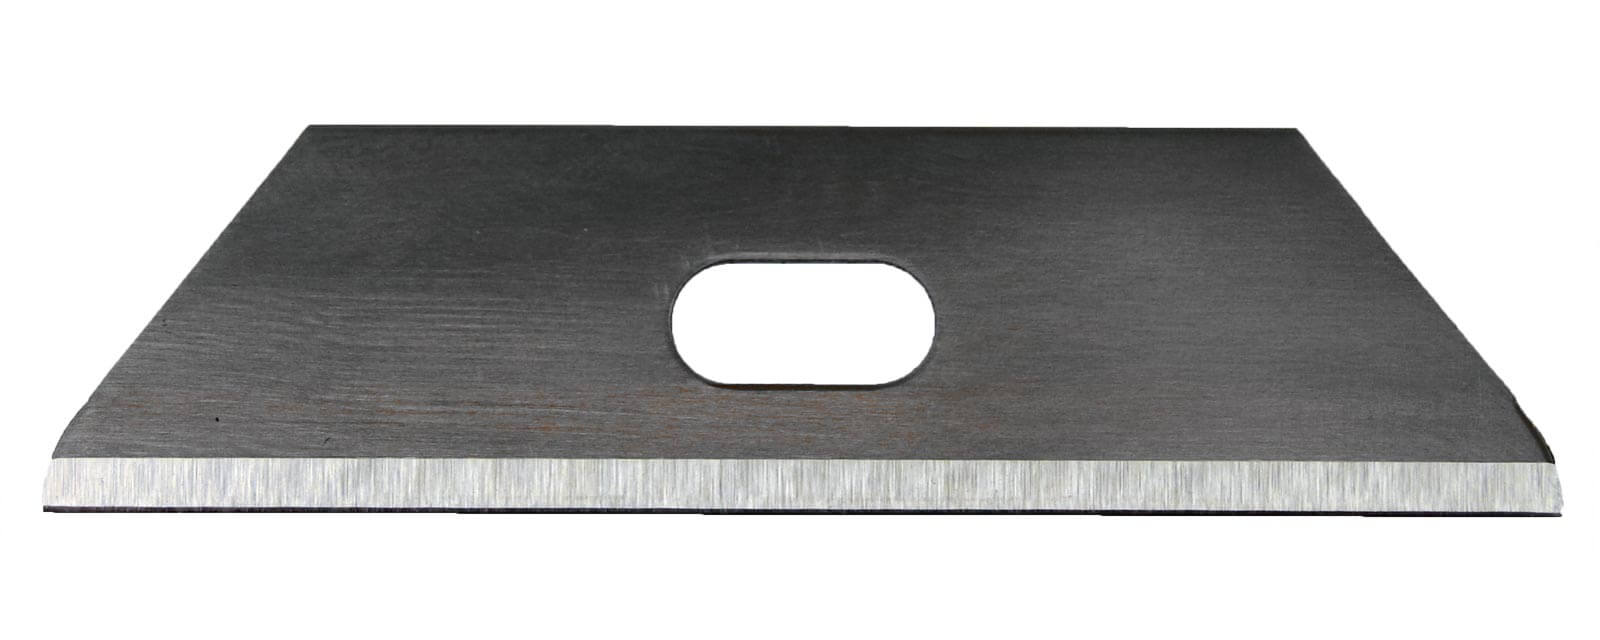 K020-Cuttermesser-Klinge-Trapezklinge-Ersatzklinge-für-Sicherheitsmesser-UAS100-CURT-tools